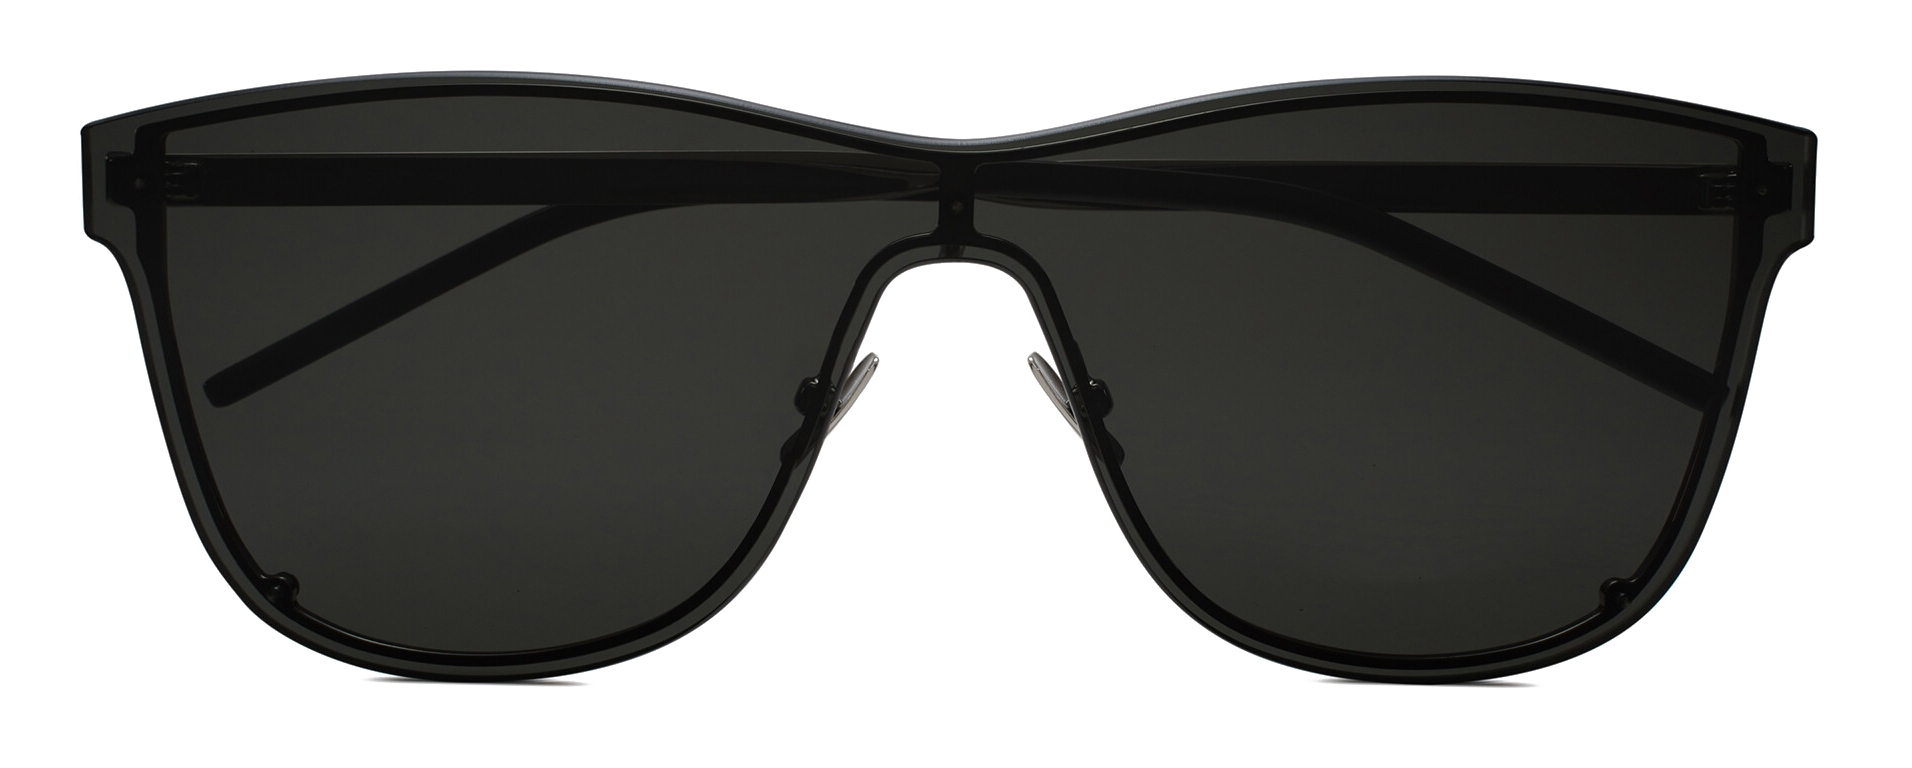 Yves Saint Laurent - Oversized SL 51 Shield Sunglasses - Black - Sunglasses  - Saint Laurent Eyewear - Avvenice